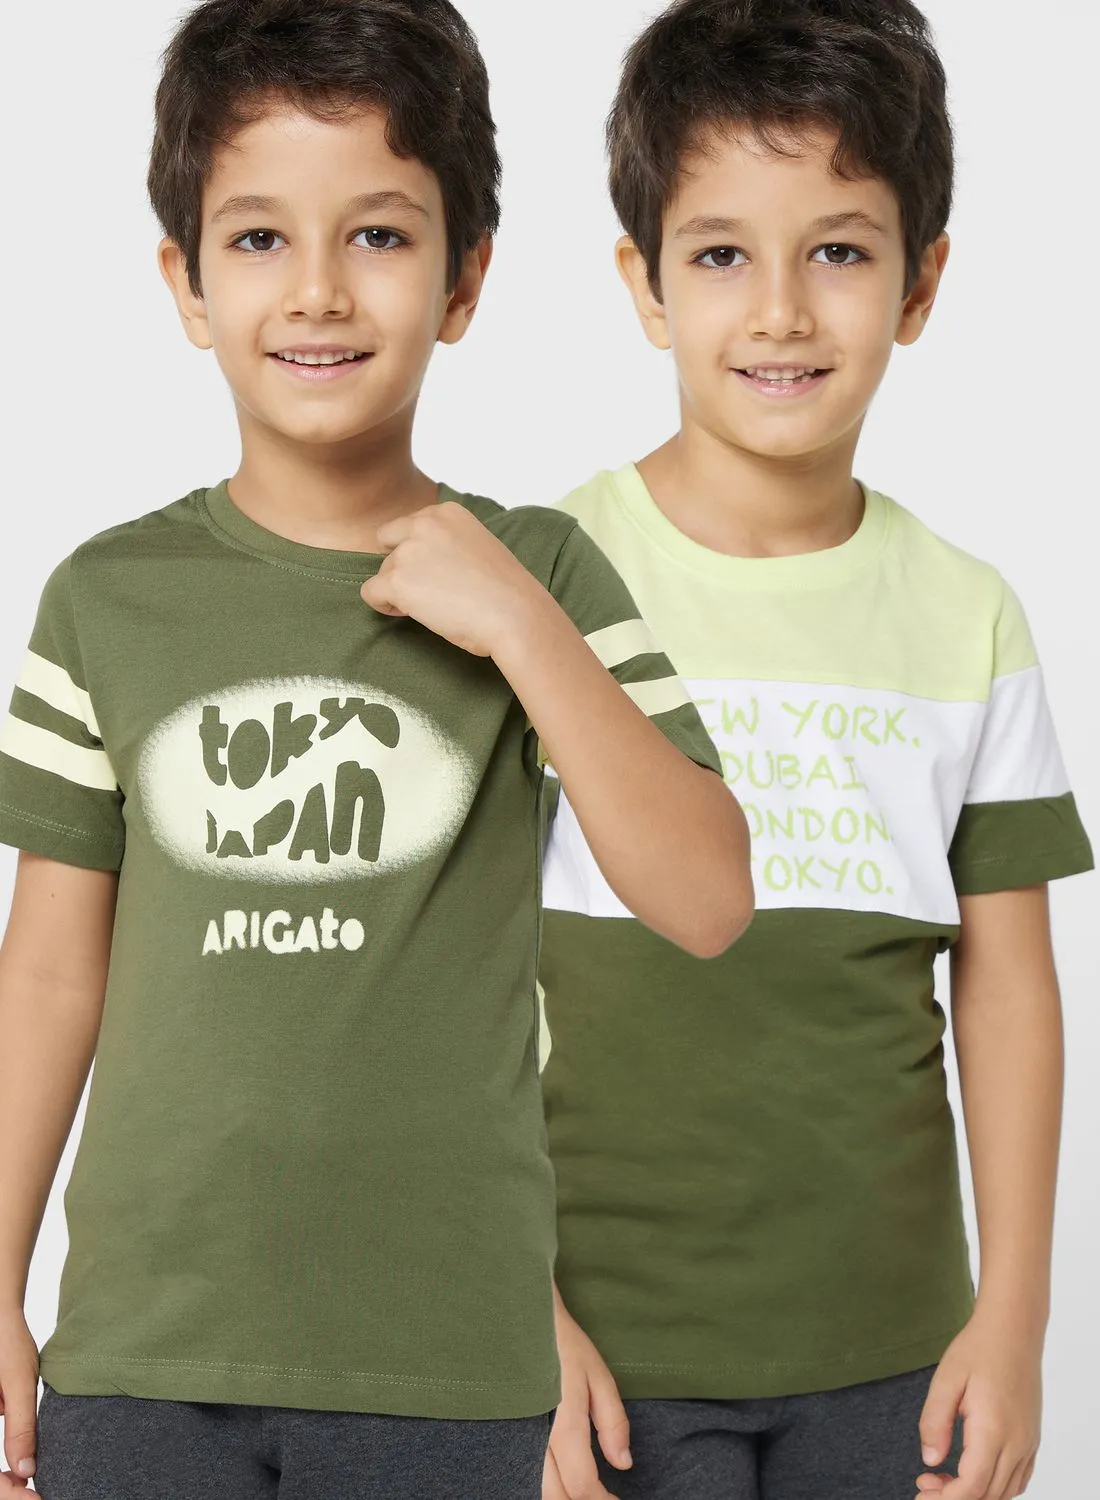 Pinata Boys 2 Pack T-Shirts